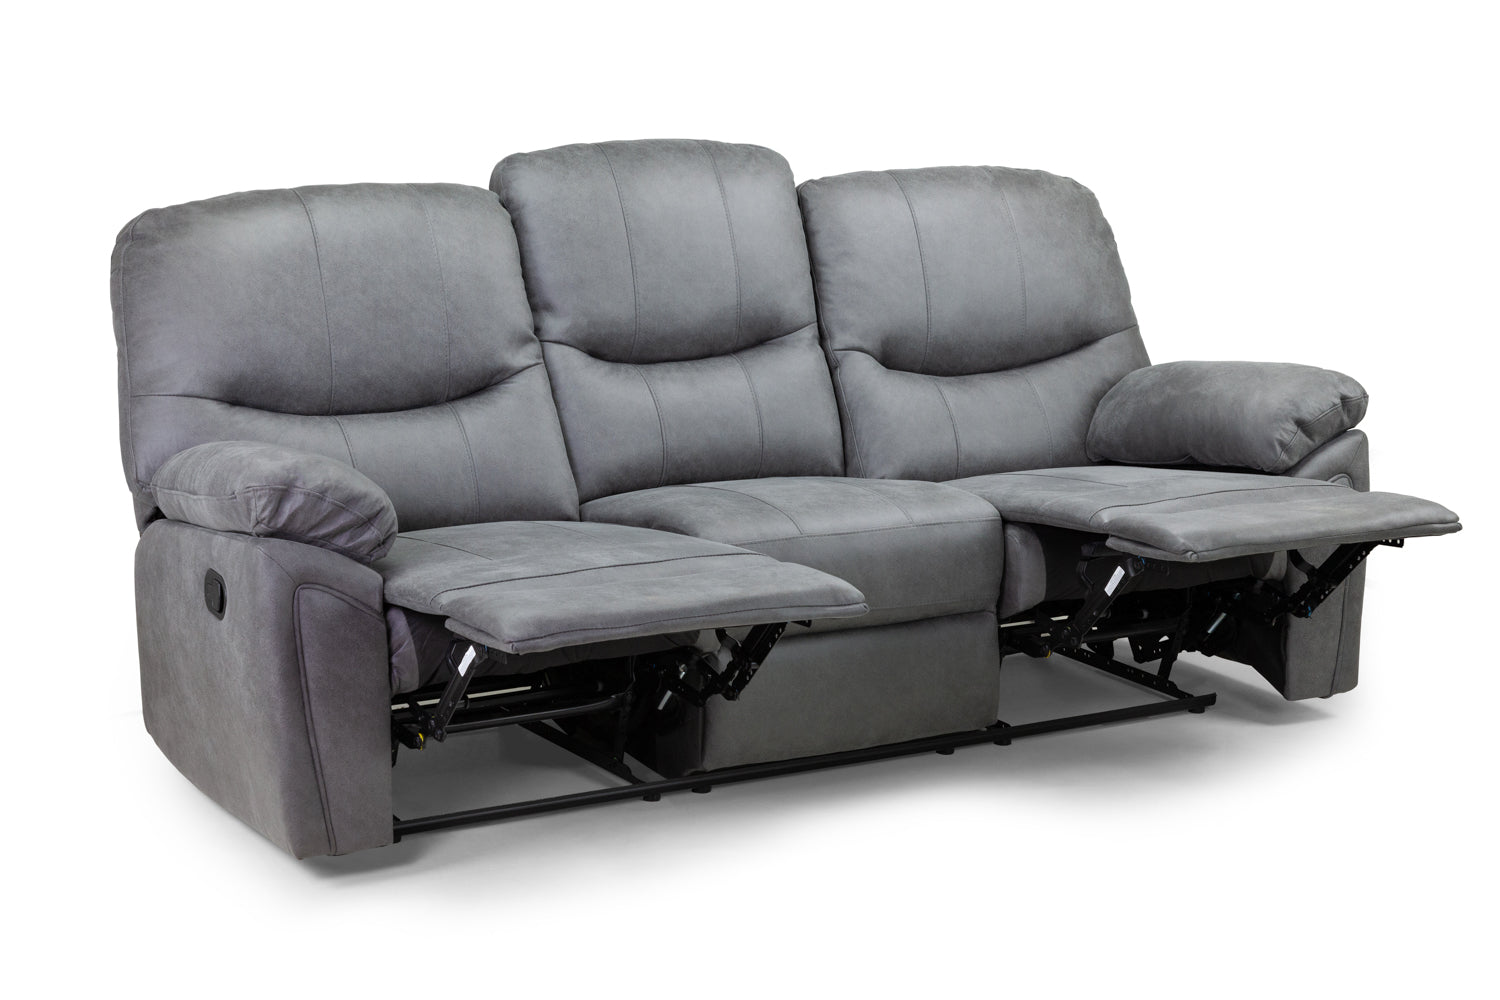 Delta Fabric Recliner Sofa Set